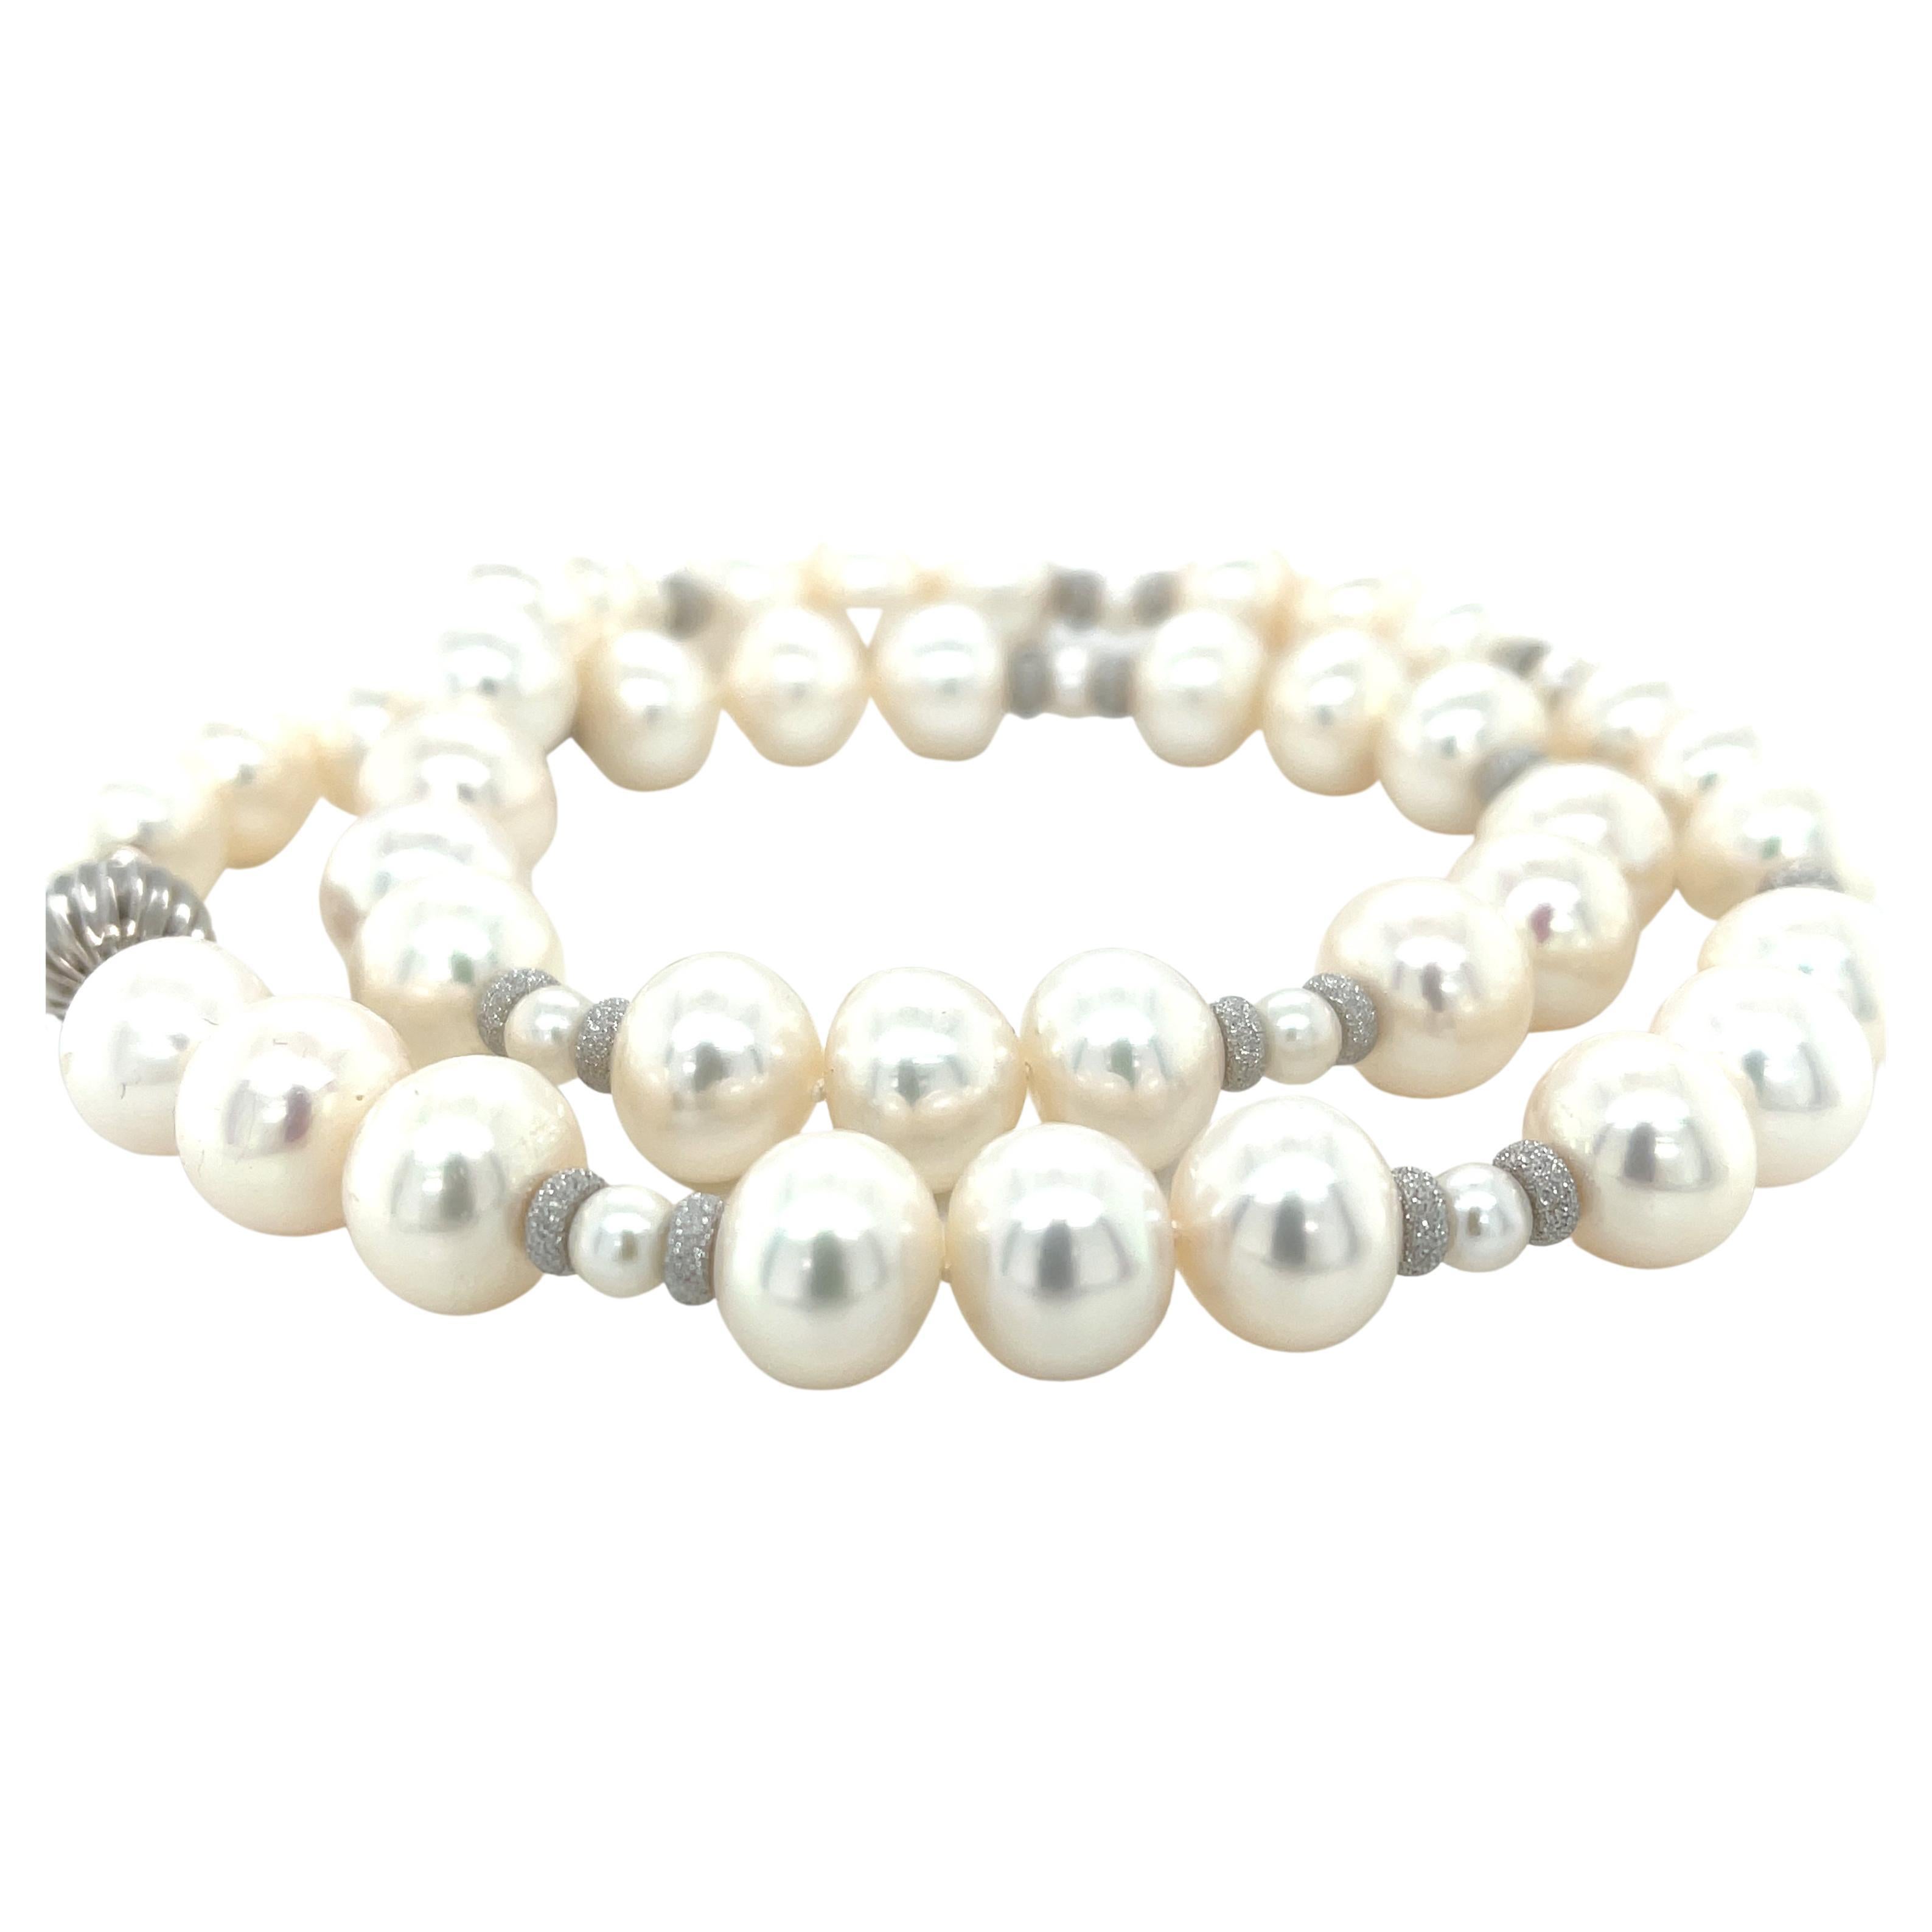 Ce collier contemporain de magnifiques perles blanches d'eau douce est une version actualisée d'un classique indémodable ! Ces perles ont un beau lustre, avec des tons subtils de rose et de gris et une forme amusante de 